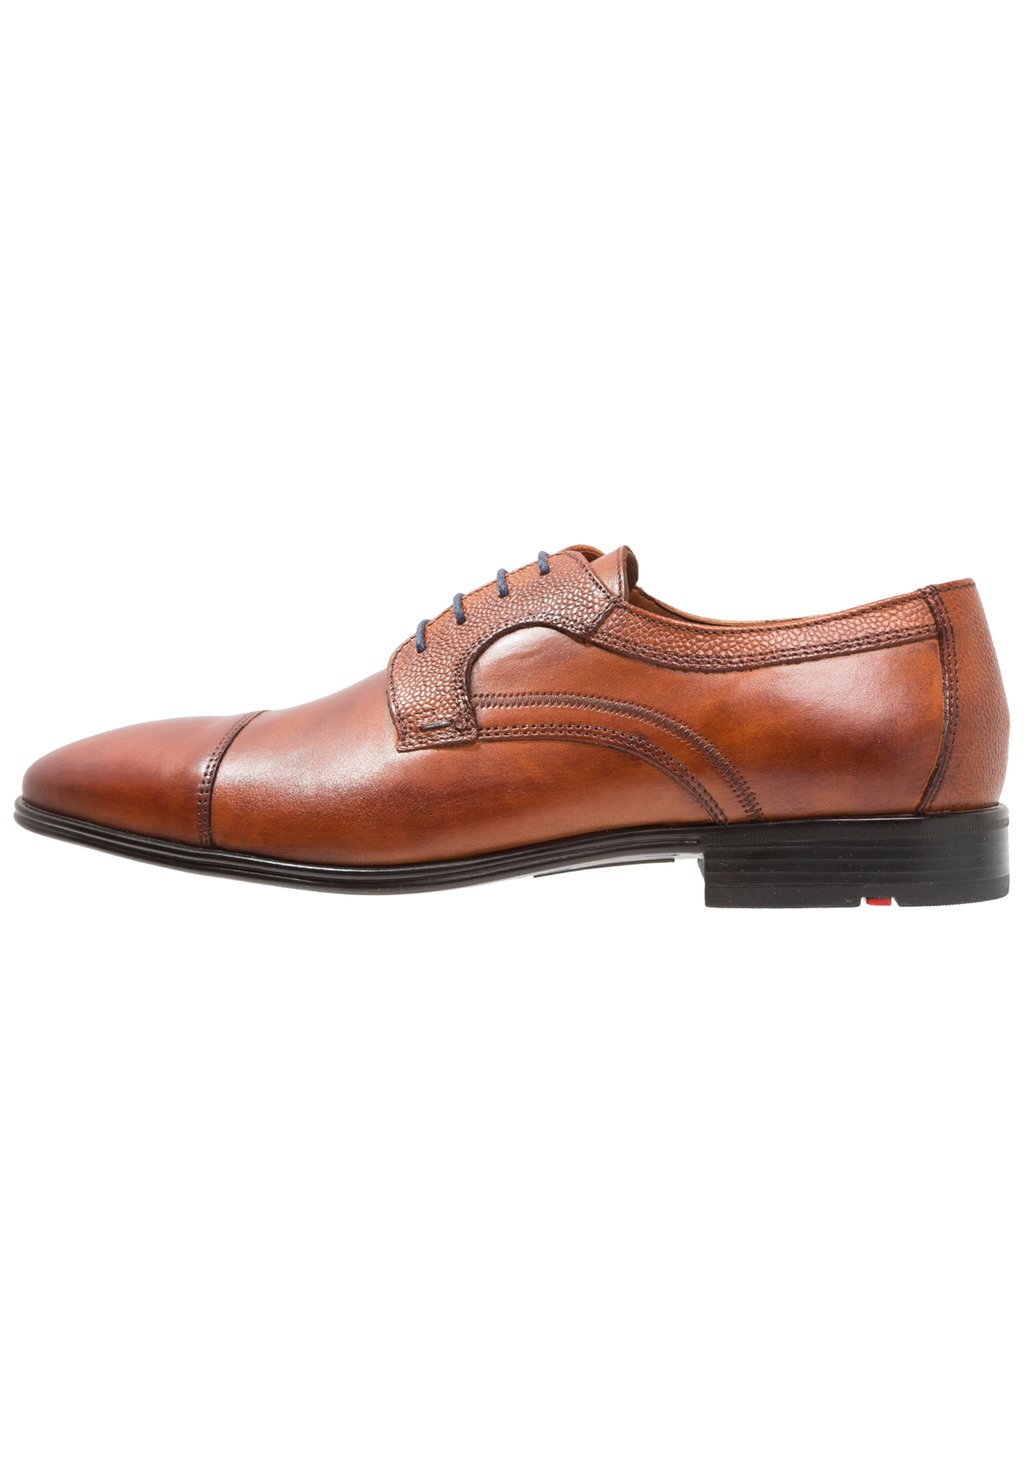 Элегантные туфли на шнуровке Orwin Lloyd, цвет cognac элегантные туфли на шнуровке faro aldo цвет cognac